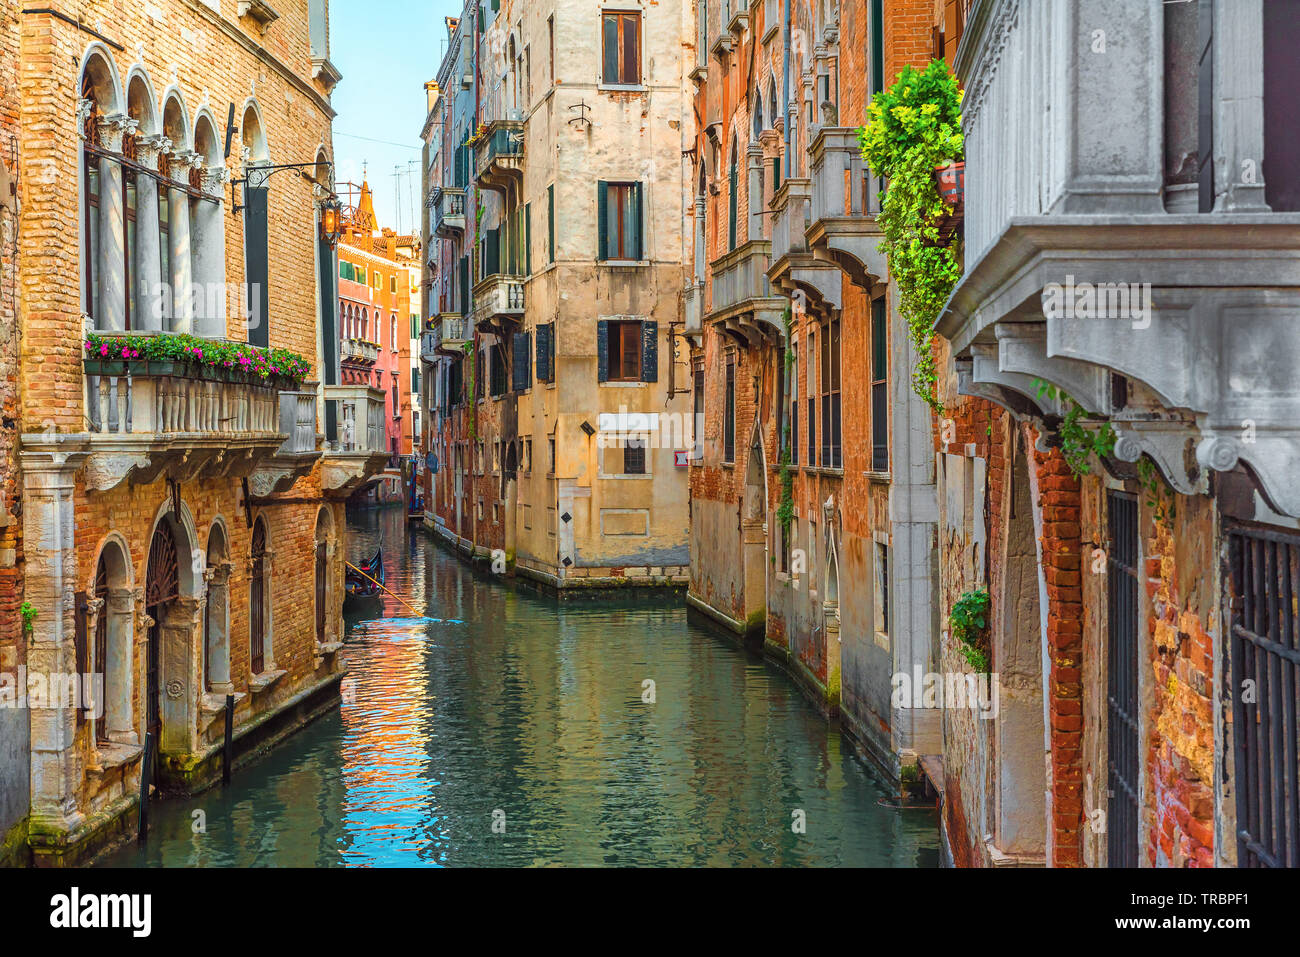 Canale veneziano con gondola e le variopinte facciate delle vecchie case medievali a Venezia, Italia nella giornata di sole Foto Stock